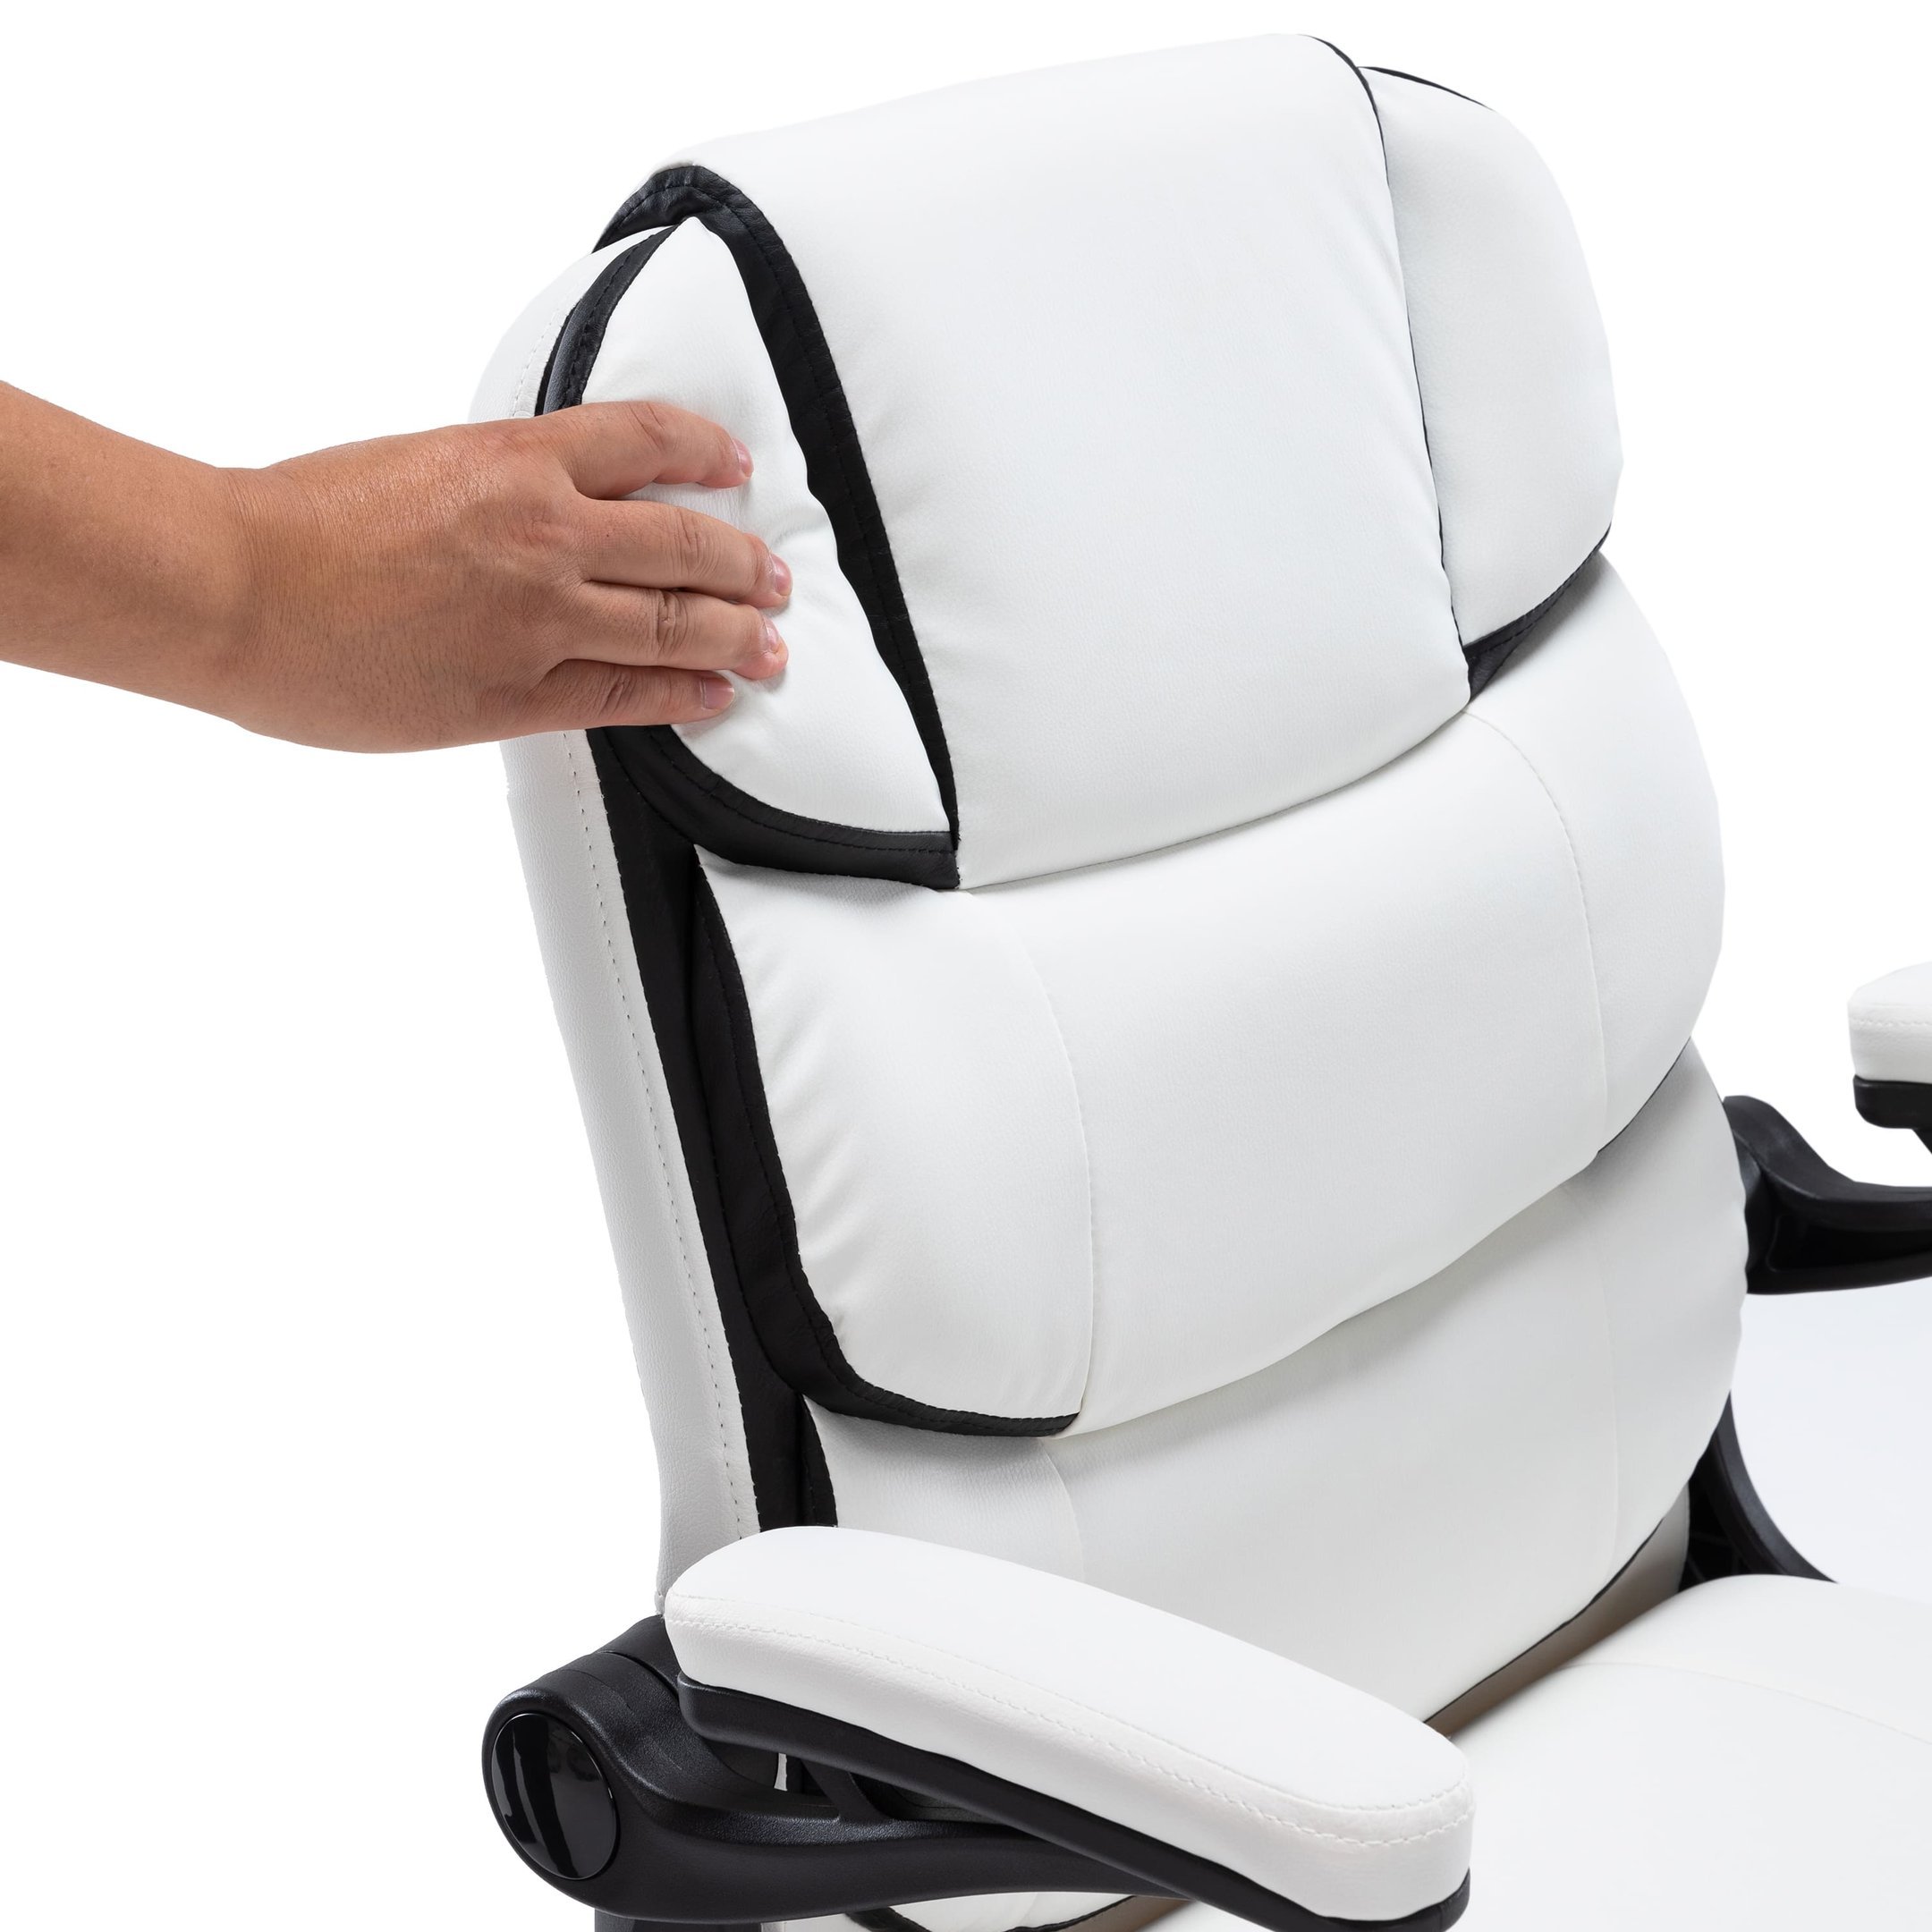 Cadeira Yamasoro Home Office Confortável de Couro com Design Ondulado (Branco e Preto) - 3